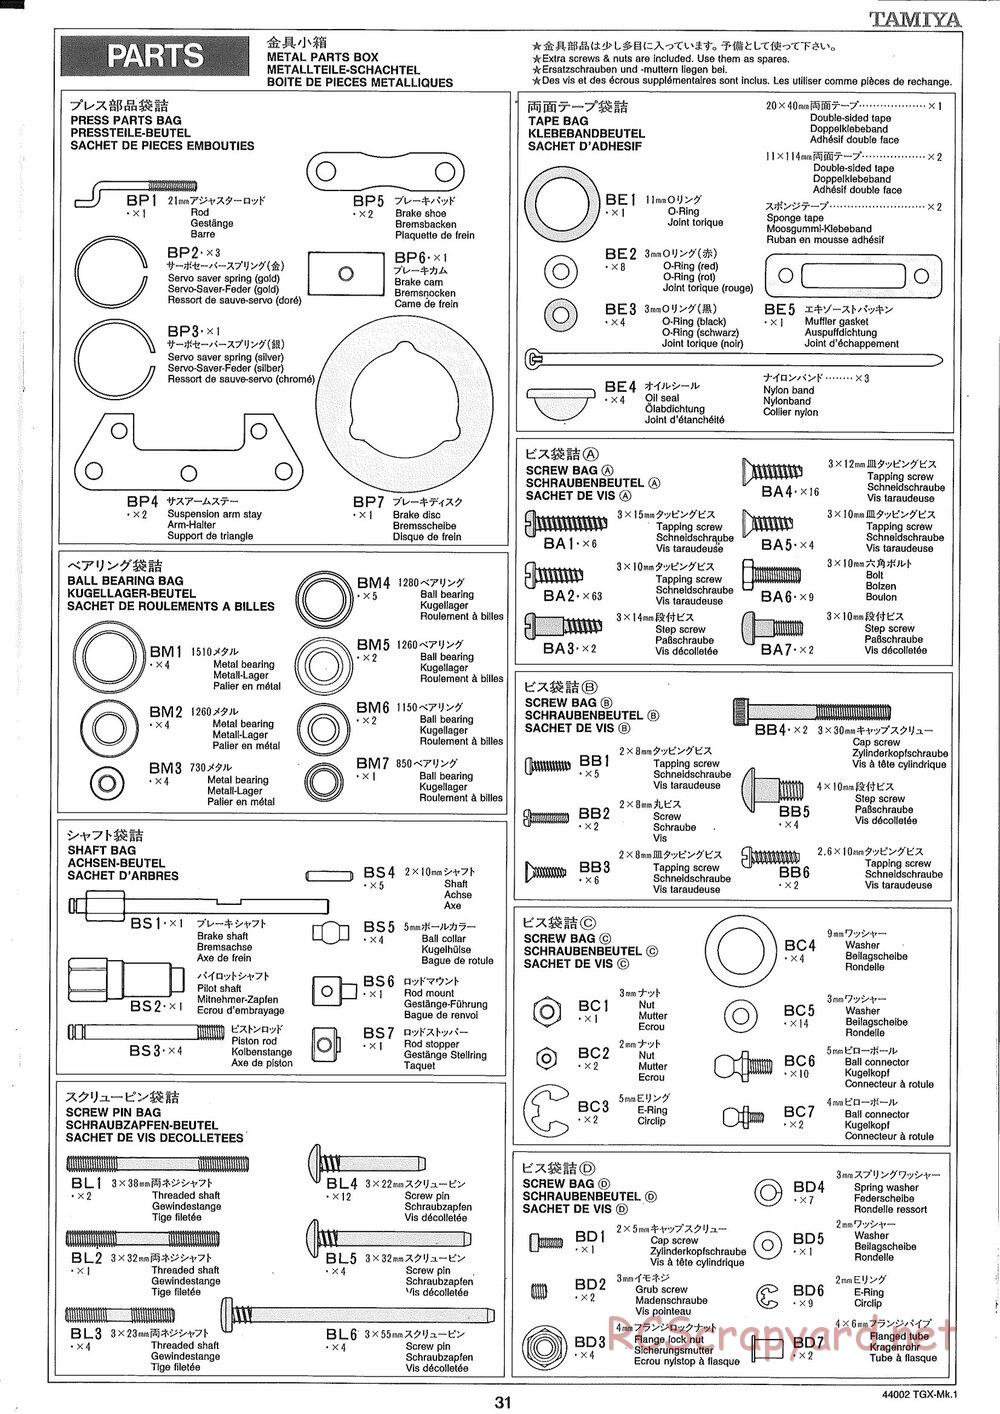 Tamiya - TGX Mk.1 TS Chassis Chassis - Manual - Page 31